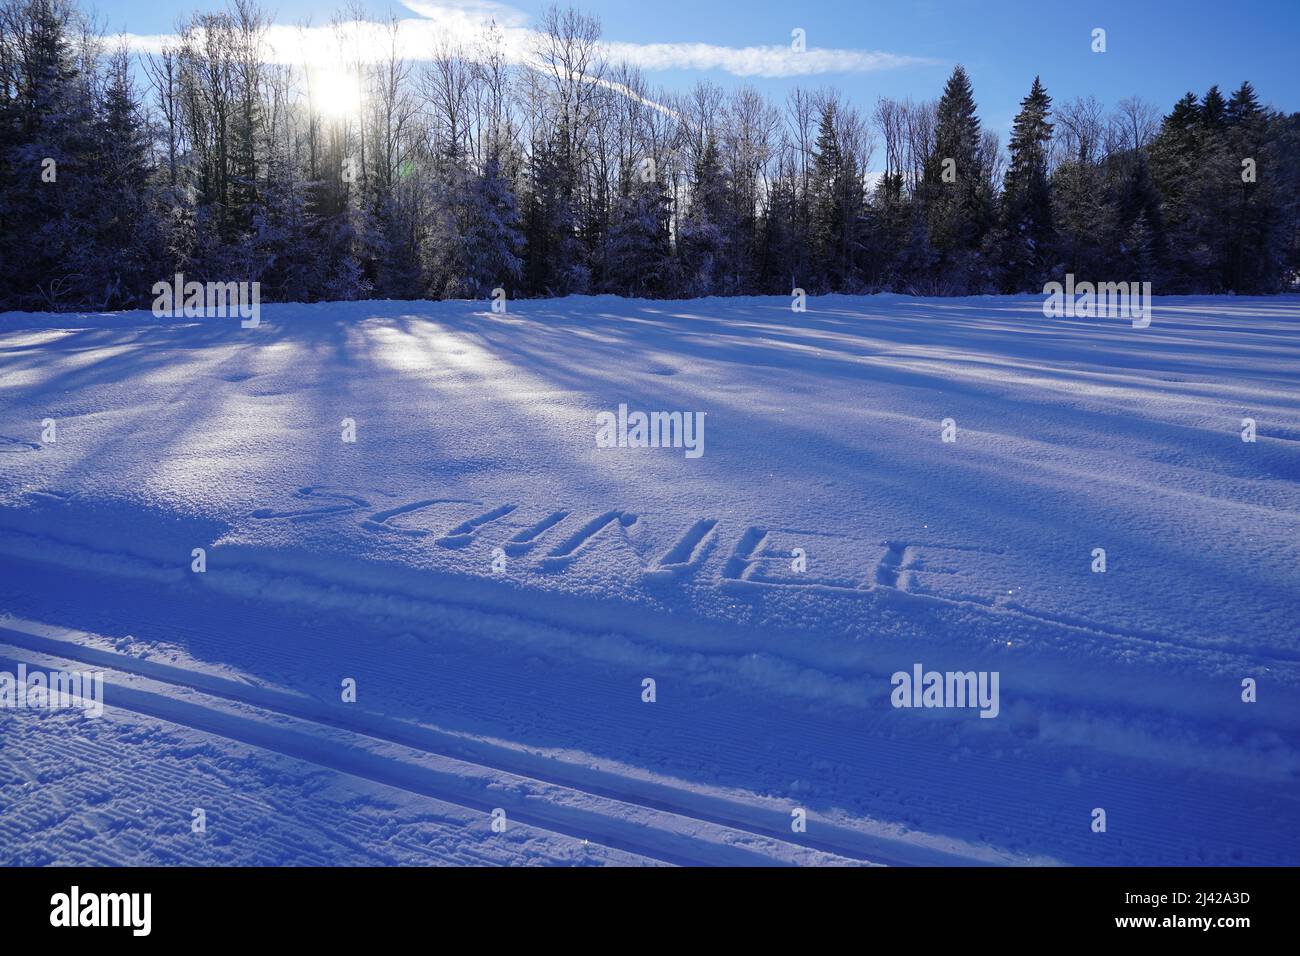 Schneebedecktes Feld mit dem Wort Schnee, was auf Deutsch Schnee im Schnee bedeutet. Es gibt Bäume im Hintergrund und etwas Sonnenschein kommt durch. Stockfoto